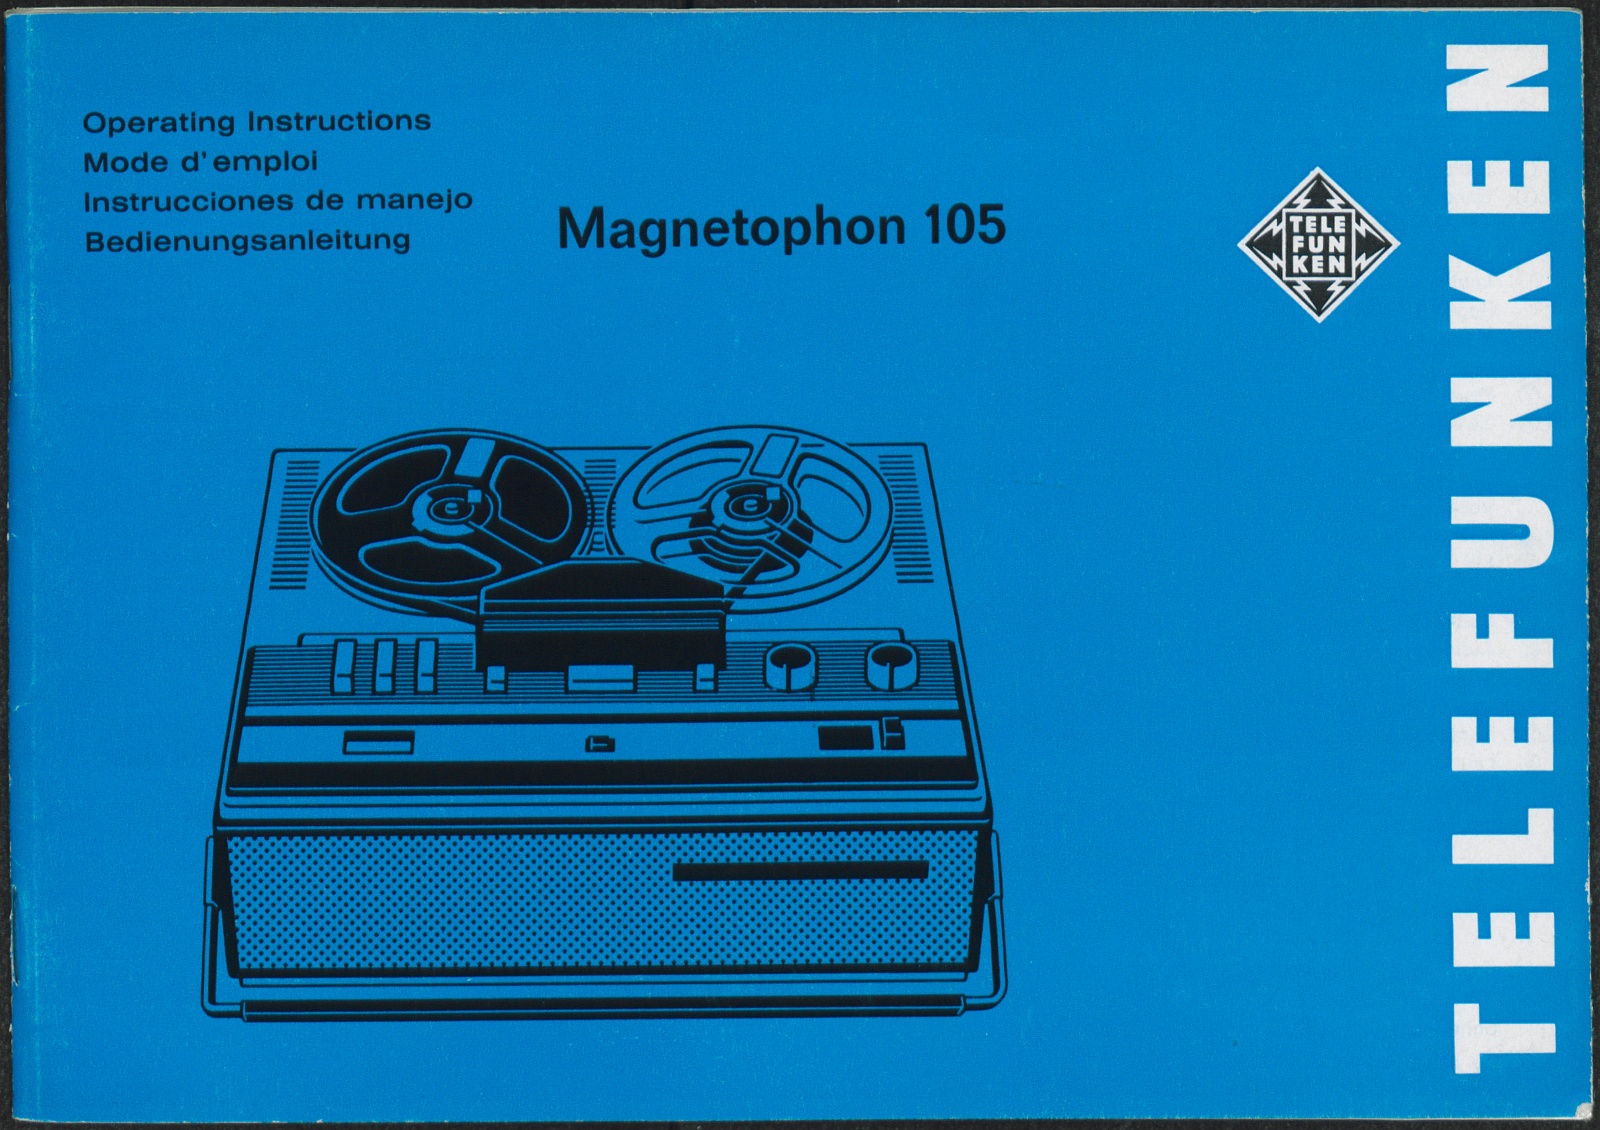 Bedienungsanleitung: Bedienungsanleitung Telefunken Magnetophon 105 (Stiftung Deutsches Technikmuseum Berlin CC0)